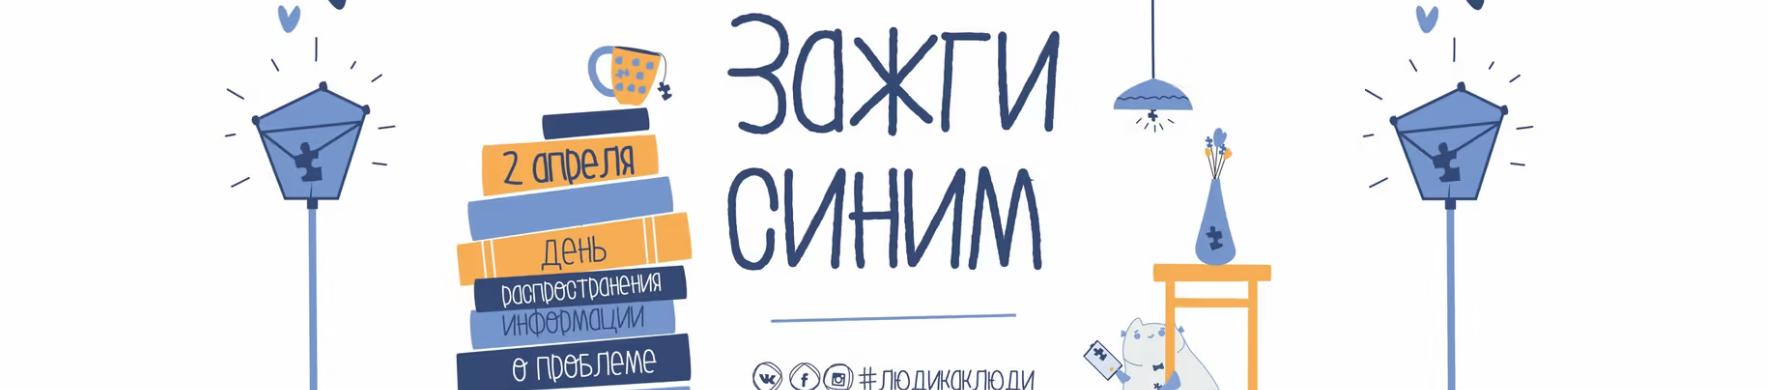 Открытие региональной площадки  Всероссийского инклюзивного фестиваля «#Люди как люди»,  приуроченного к Всемирному дню распространения информации  о проблеме аутизма